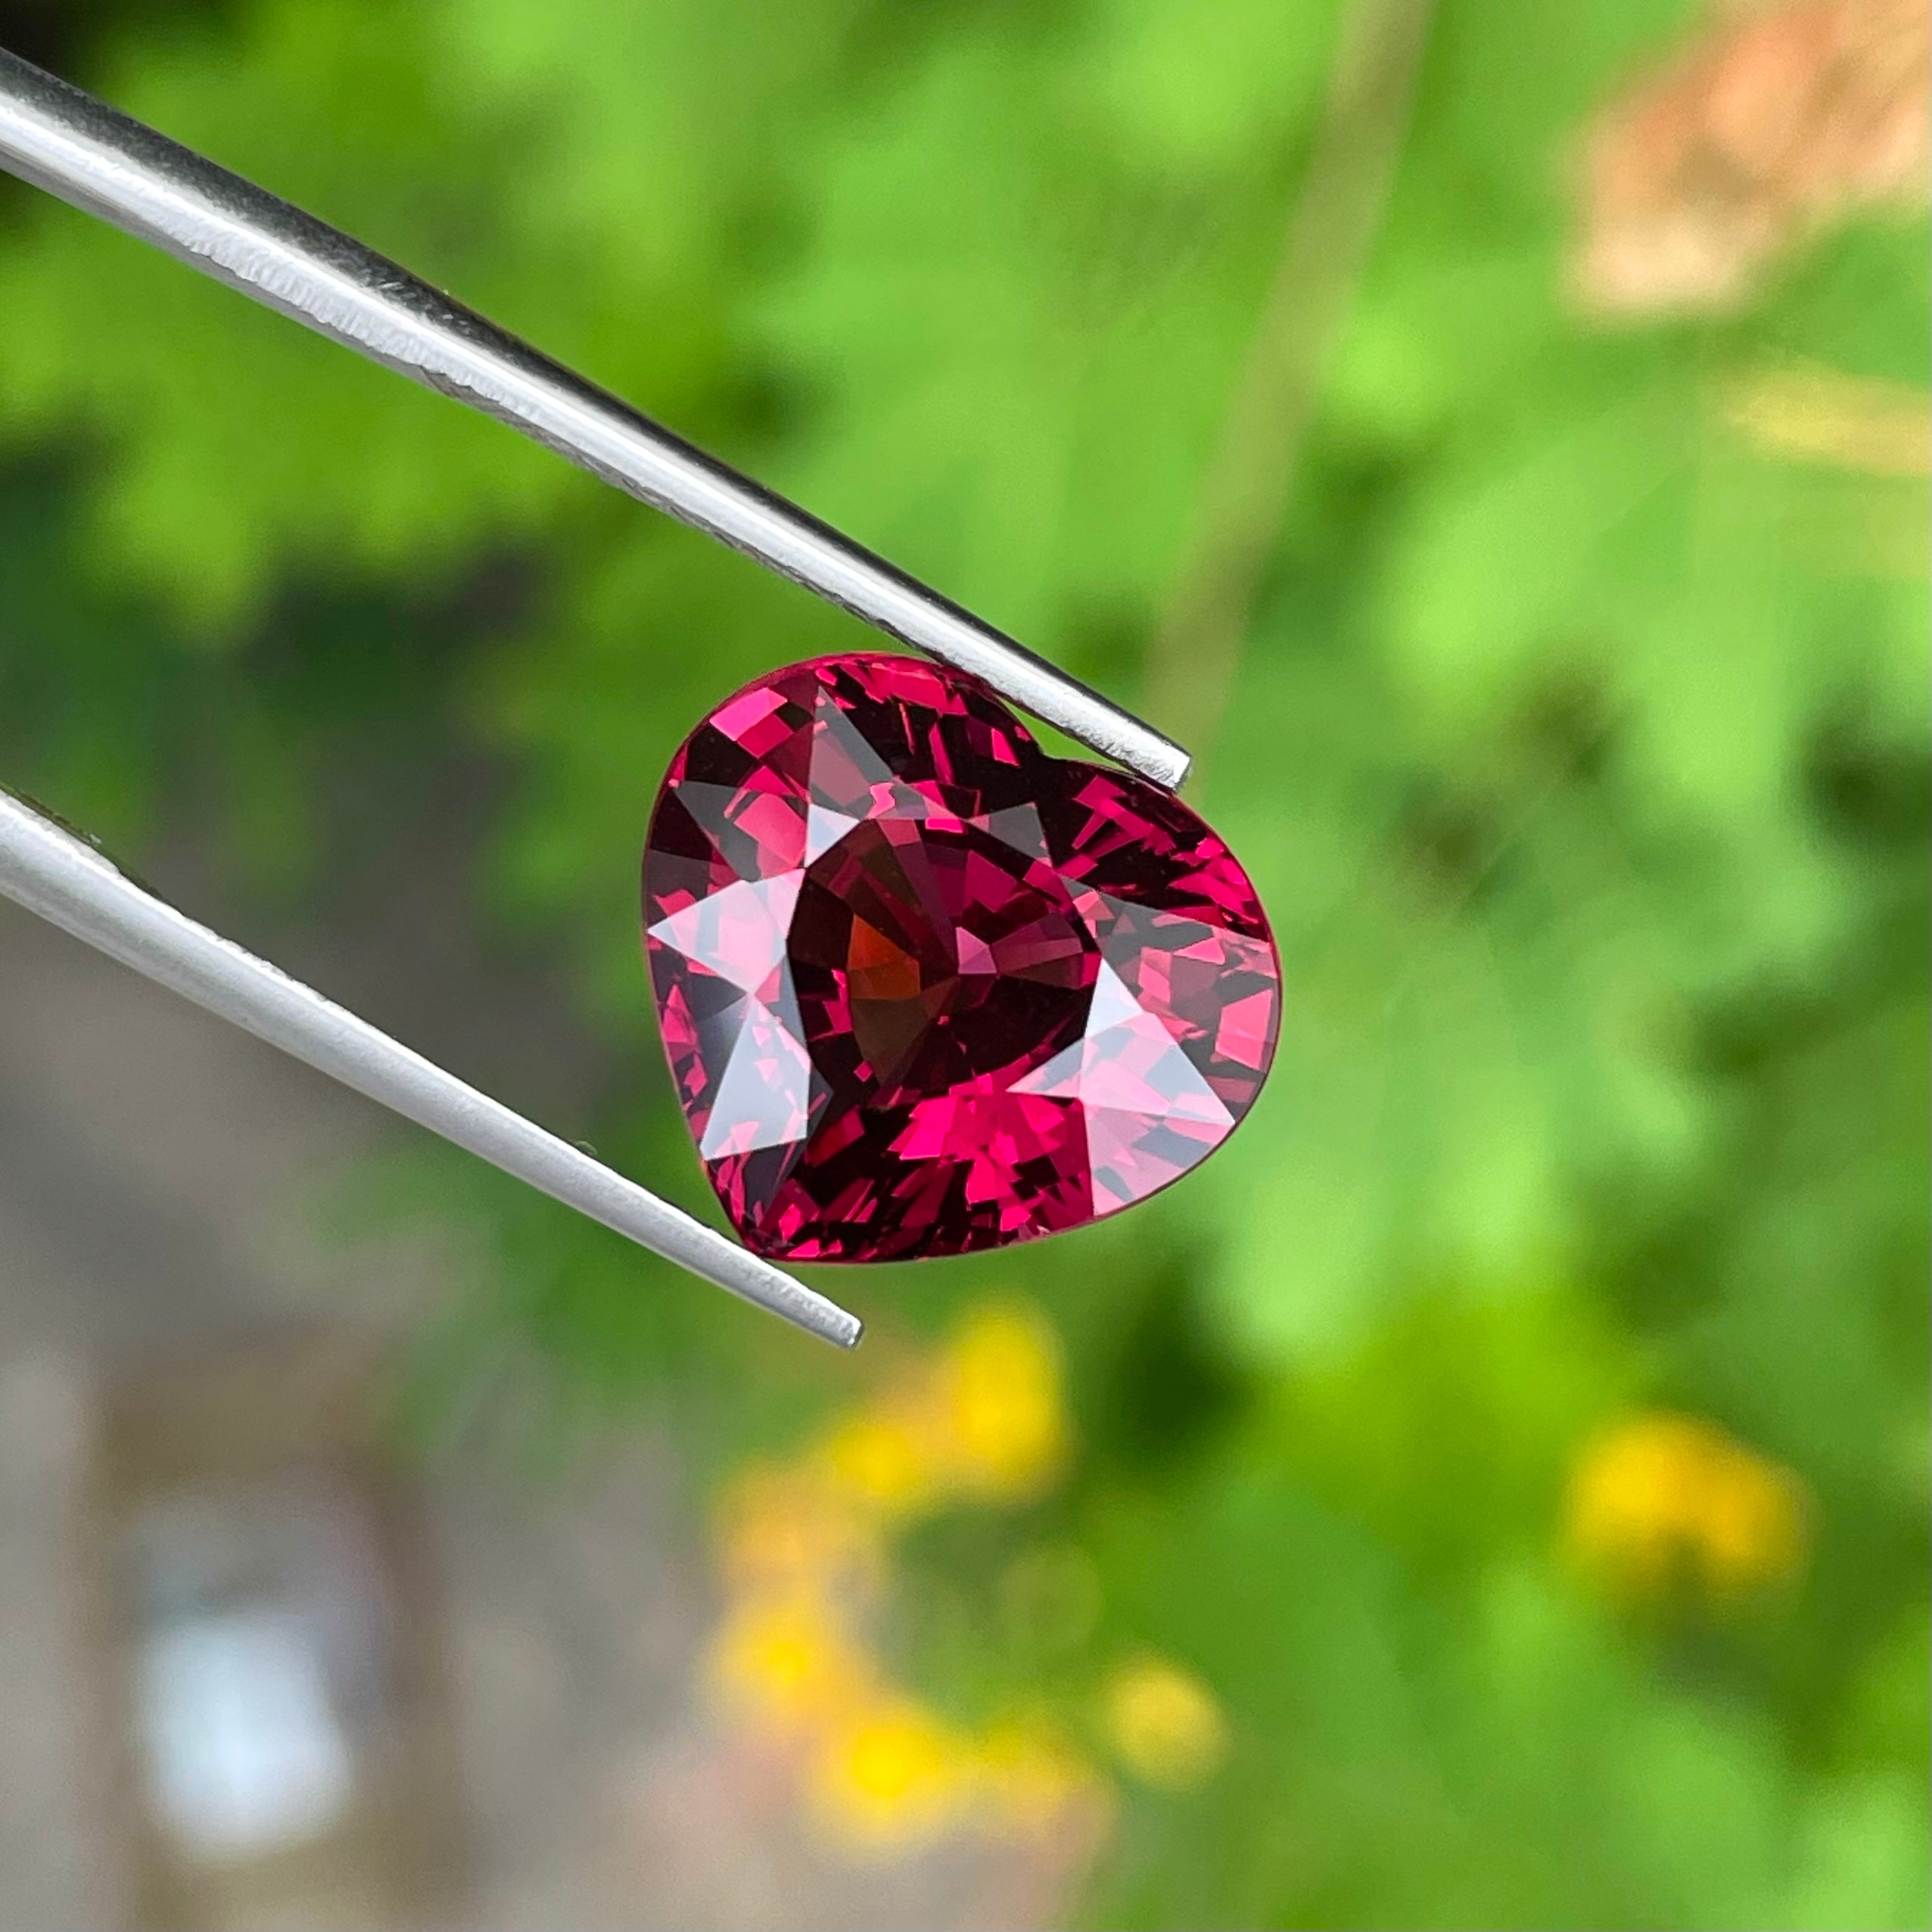 Bright Heart Shaped Red Garnet 10.35 carats Natural Loose Tanzanian Gemstone